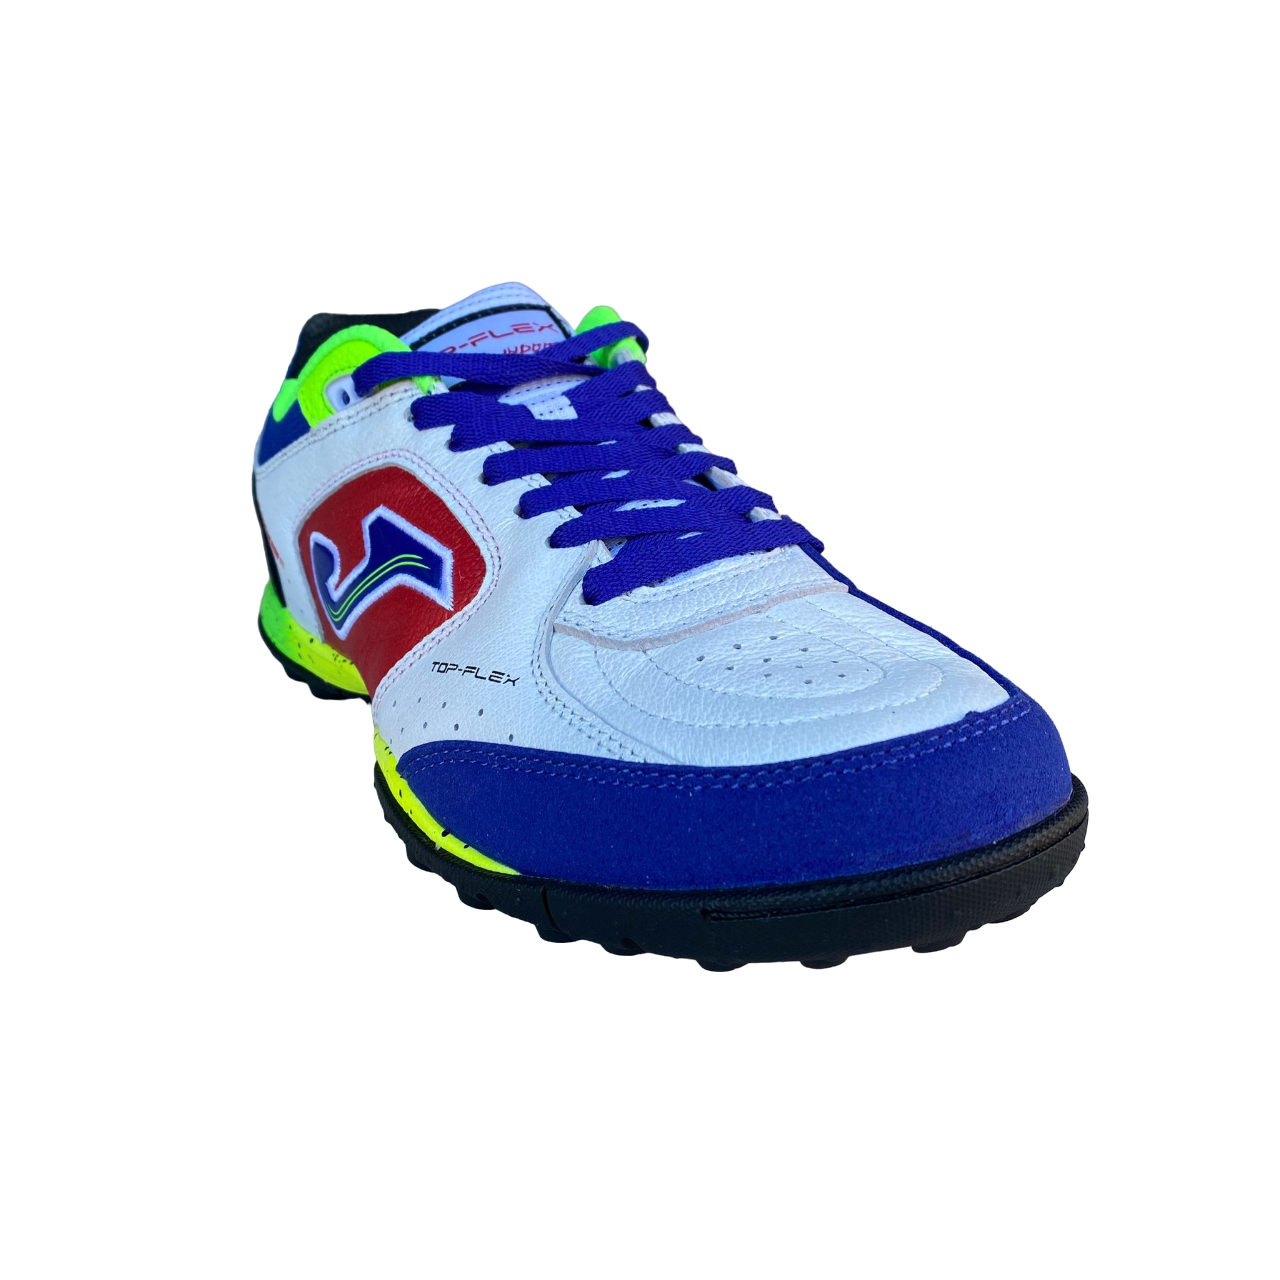 Joma men&#39;s soccer shoe Top Flex 2416 white red light blue